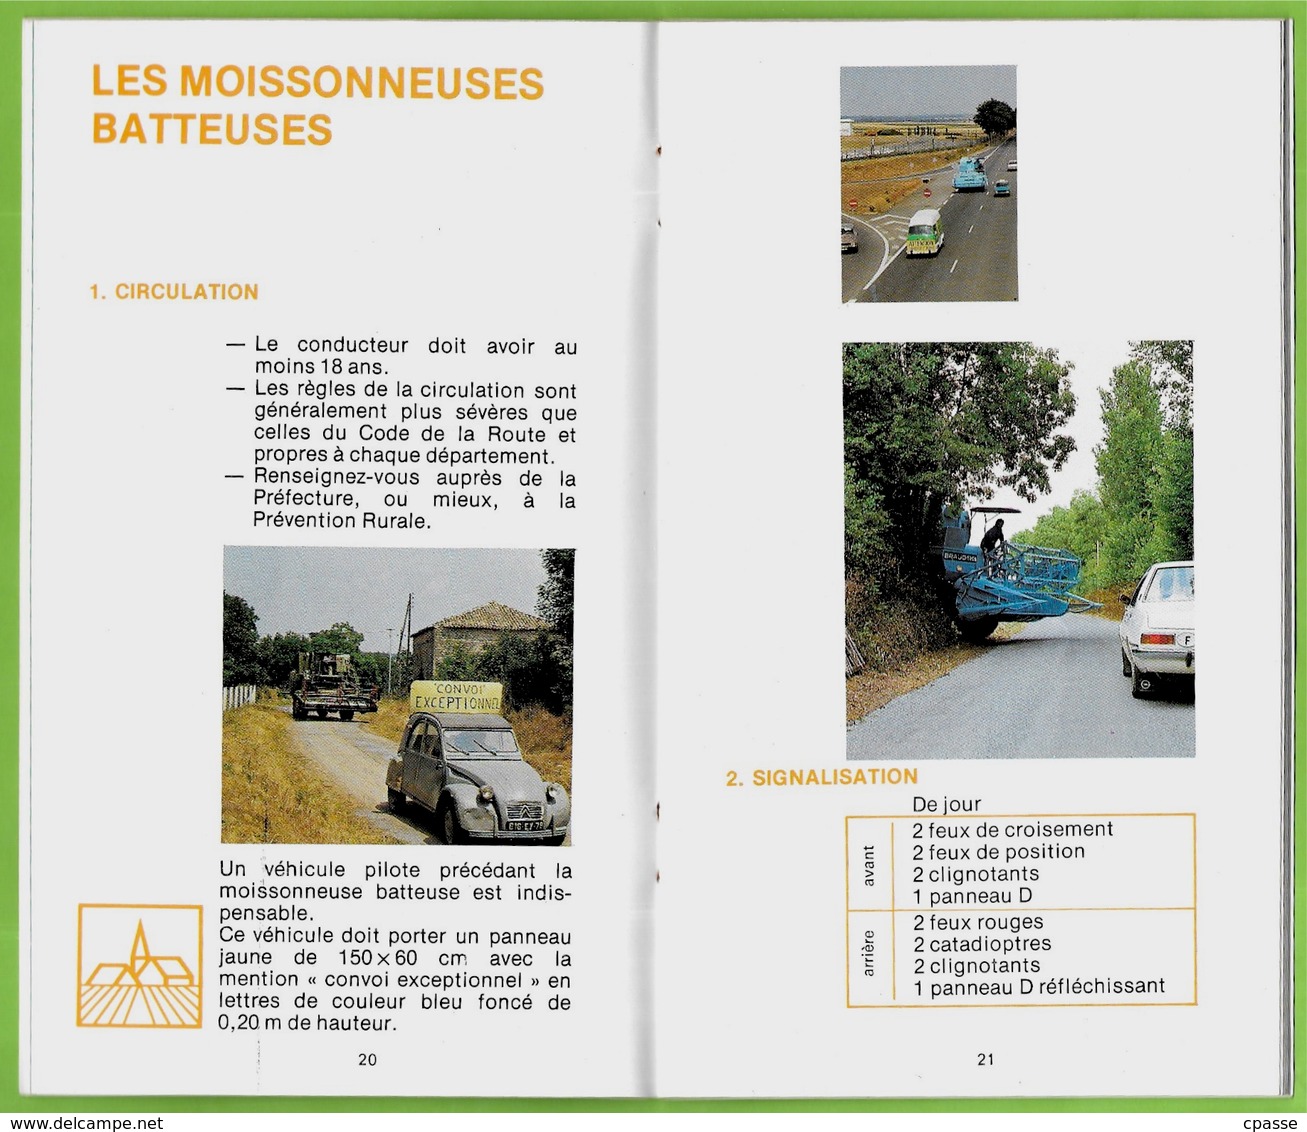 Brochure "LE TRACTEUR et votre sécurité" publiée par les Assurances Mutuelles Agricoles ** Agriculture